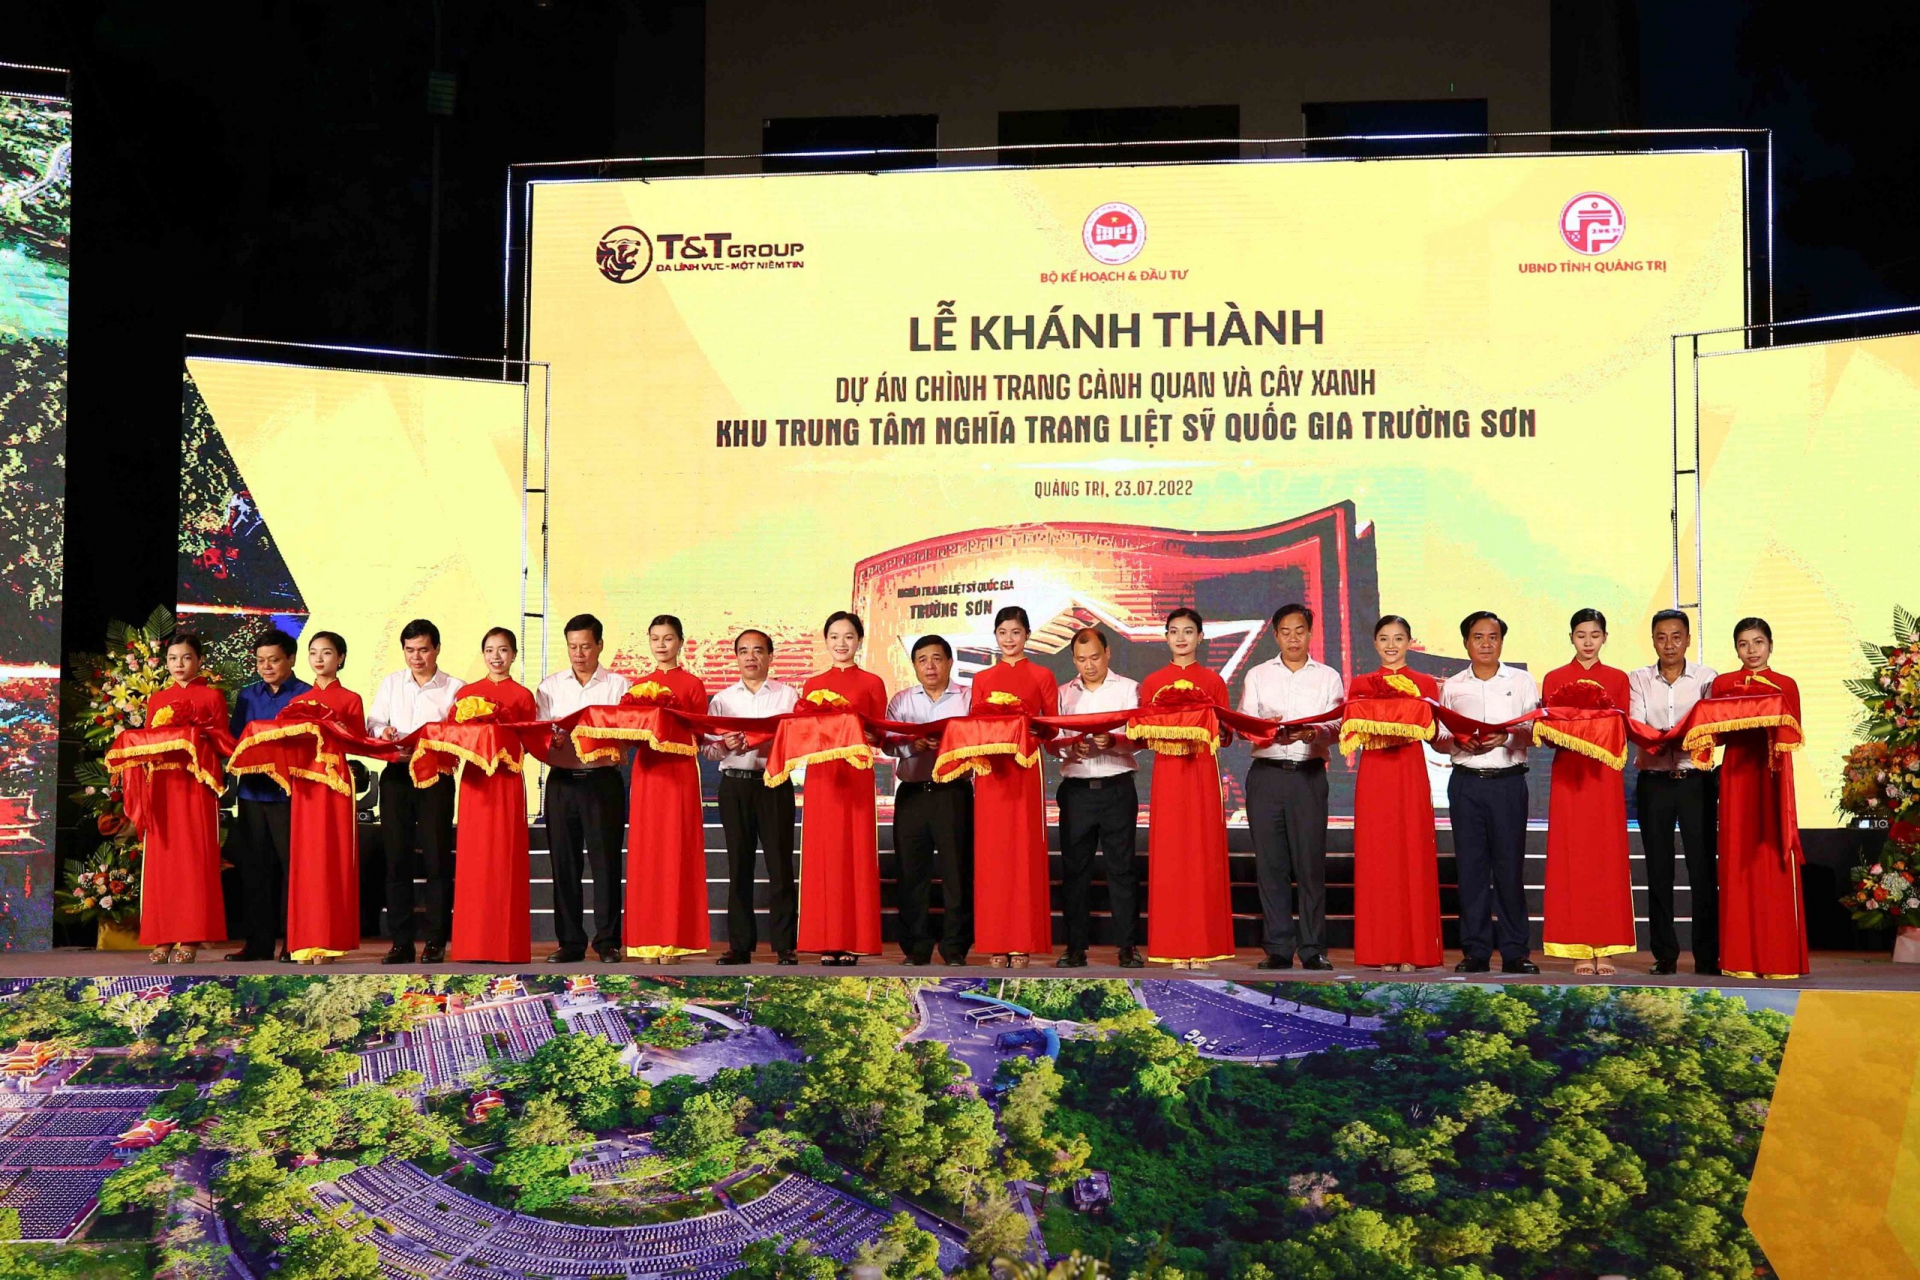 Chủ tịch UBND tỉnh Nguyễn Văn Sơn tham gia cắt băng khánh thành giai đoạn 2 dự án Cải tạo Nghĩa trang Liệt sỹ Quốc gia Trường Sơn.